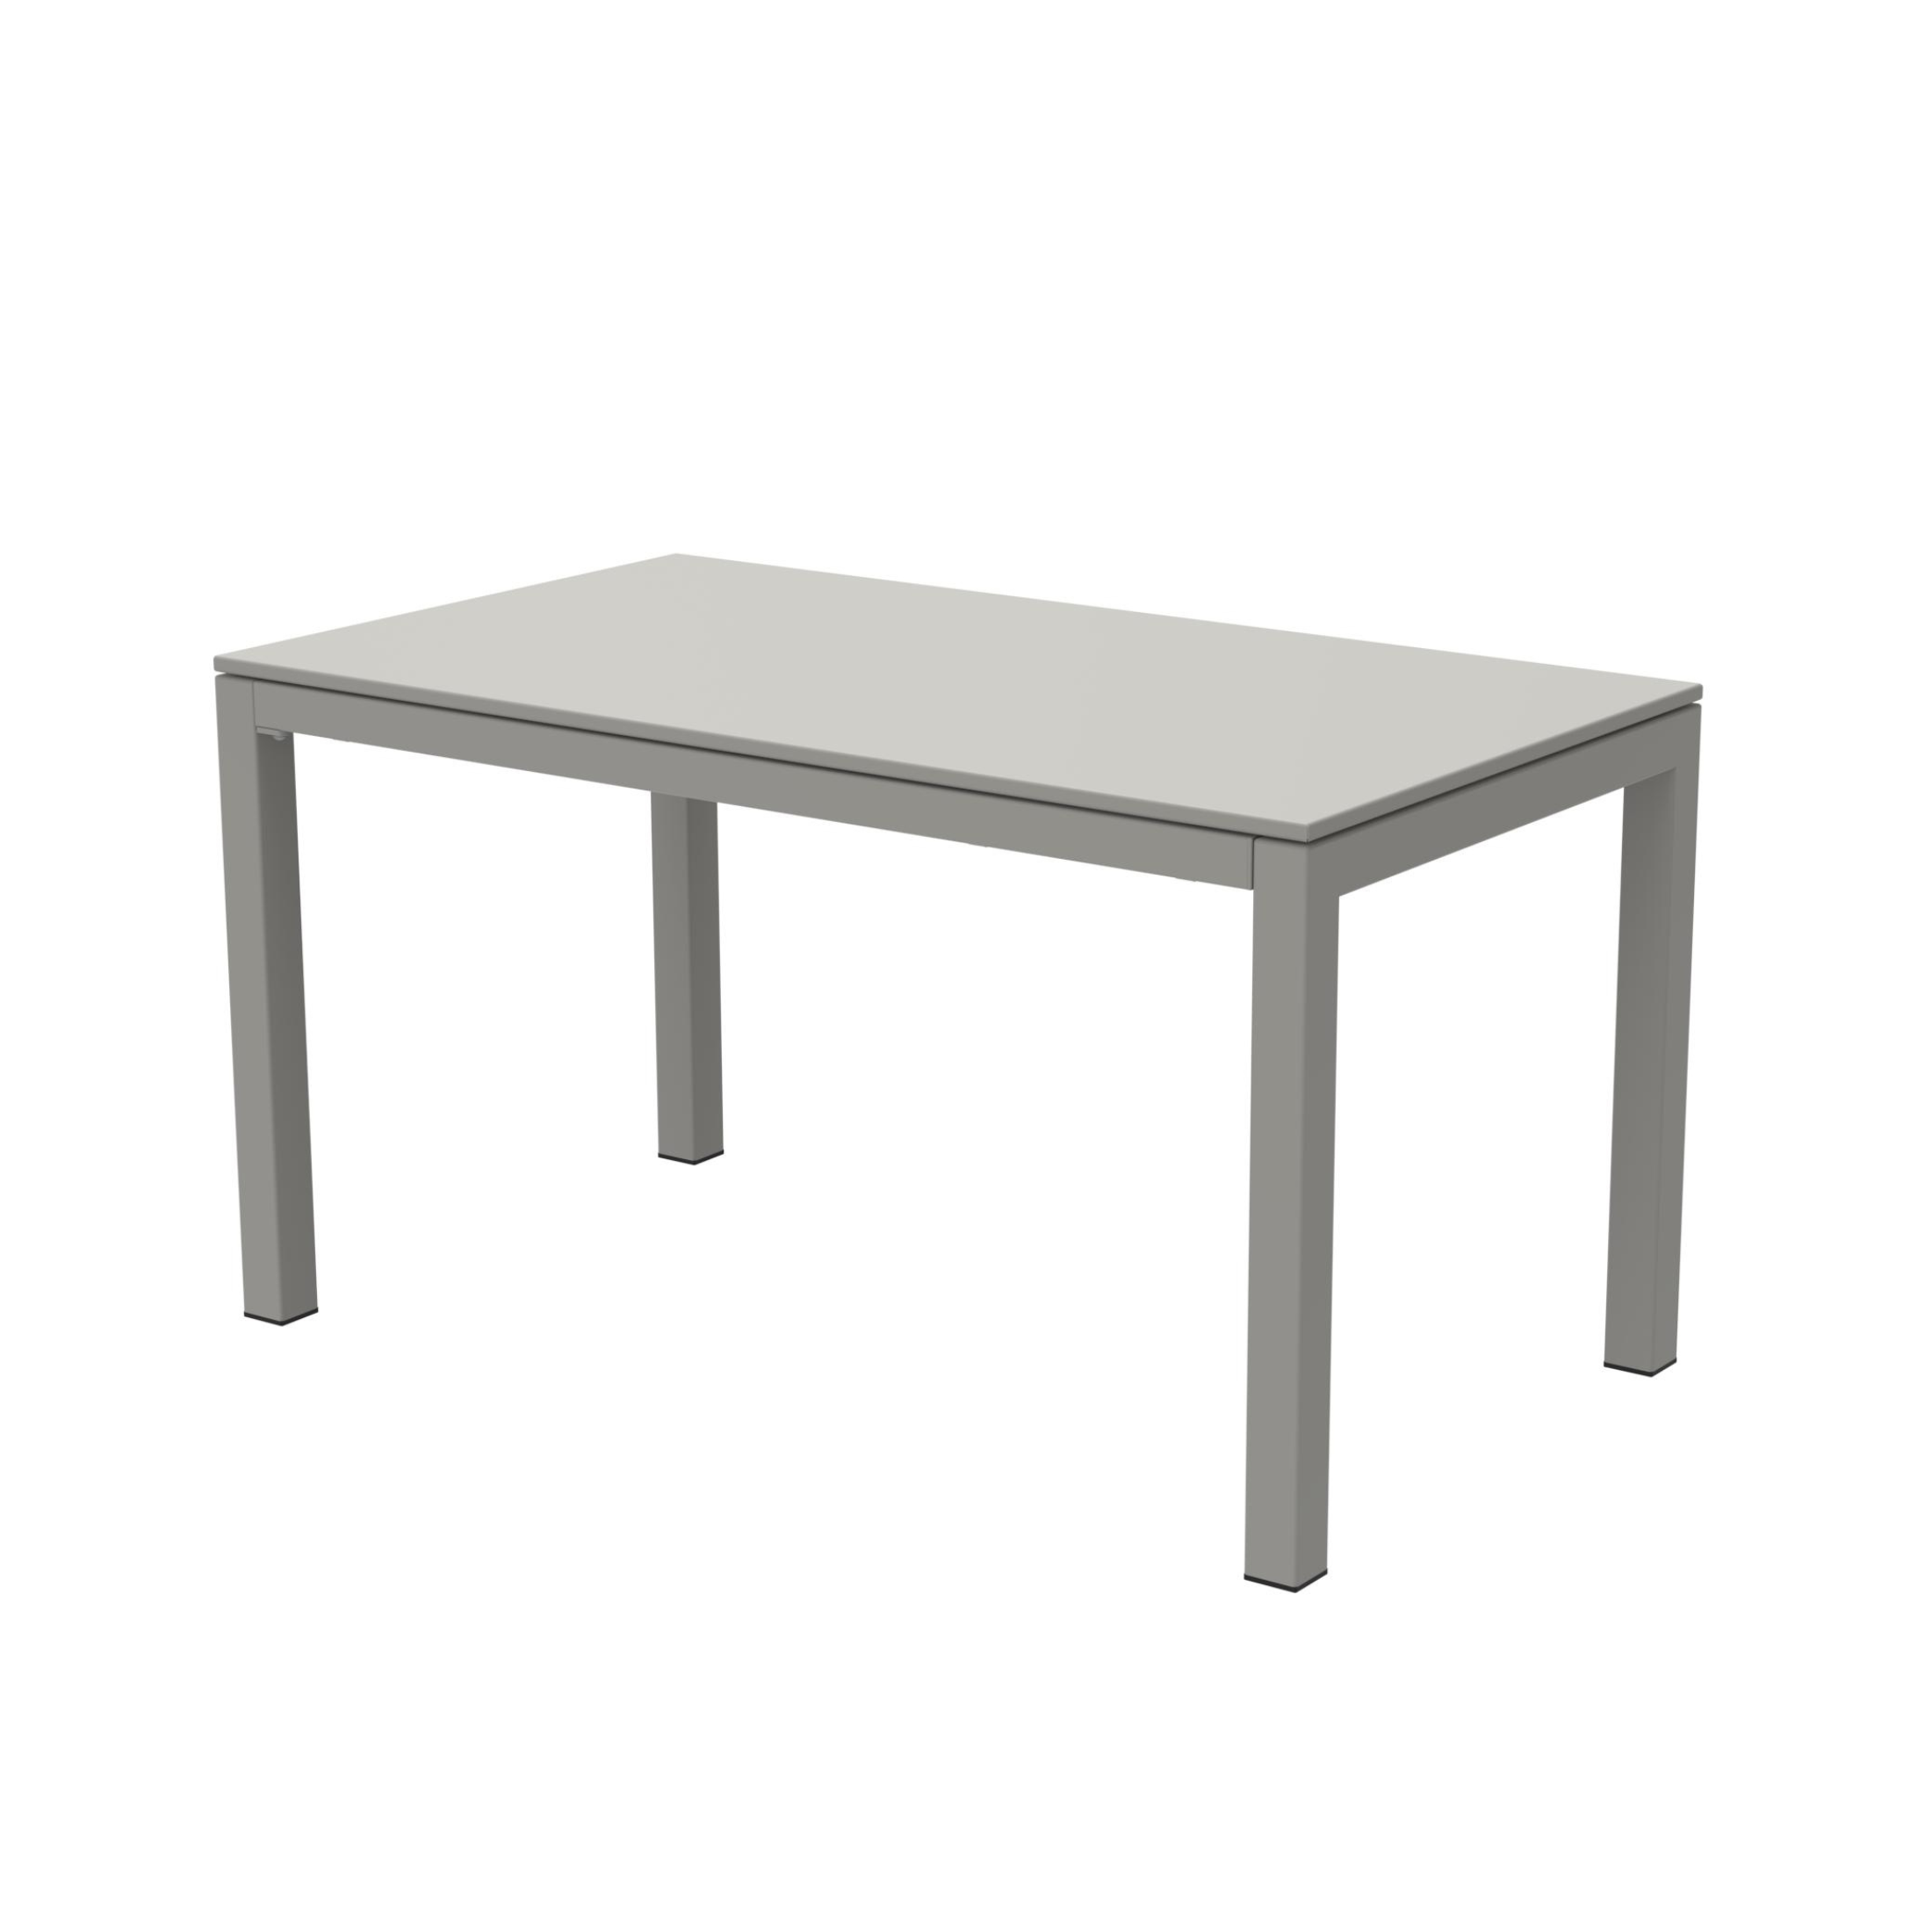 Table extensible "Extia" en métal peint pour jardin moderne